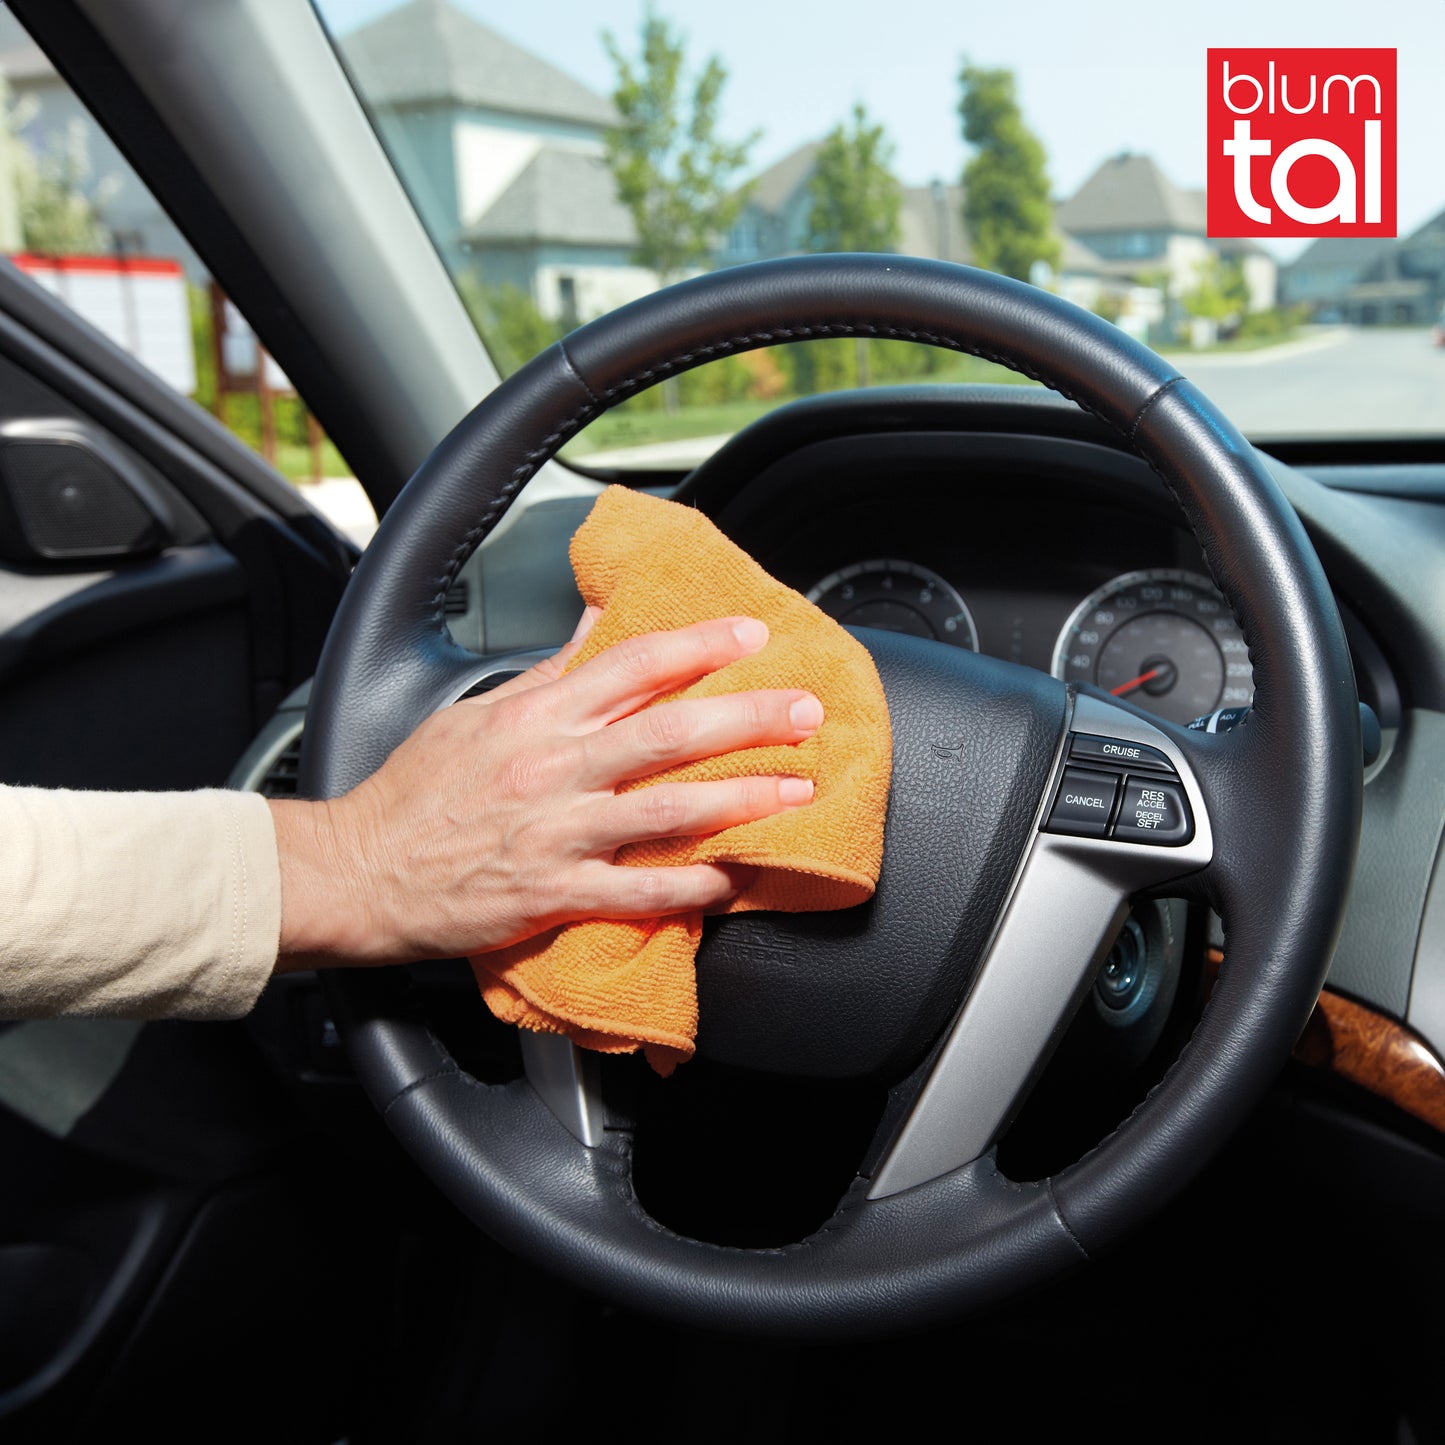 Ein Mikrofasertuch in der Hand einer Person die das Lenkrad eines Autos reinigt.